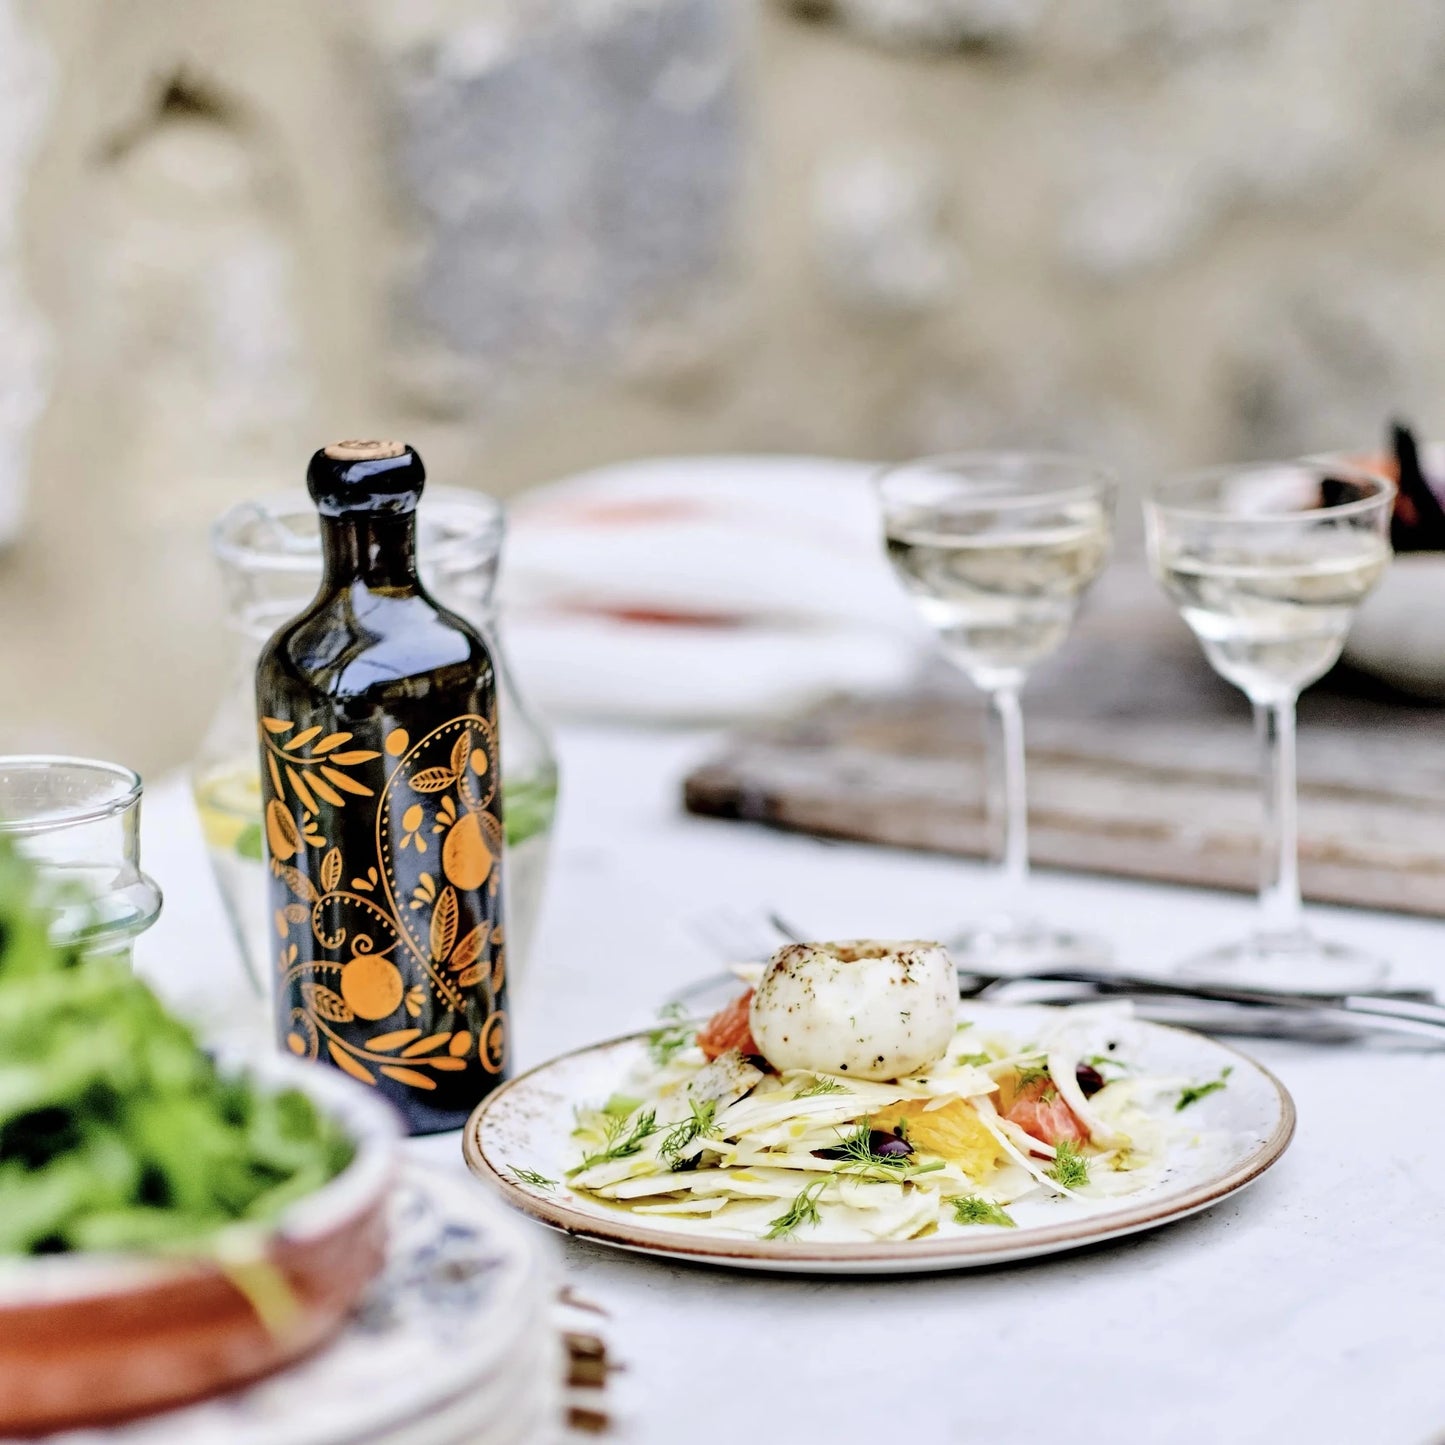 flasche mit olivenöl mit mandarinenaroma, verziert mit orangen mustern, auf einem gedeckten tisch neben einem teller mit einem gericht und zwei gläsern weißwein im hintergrund